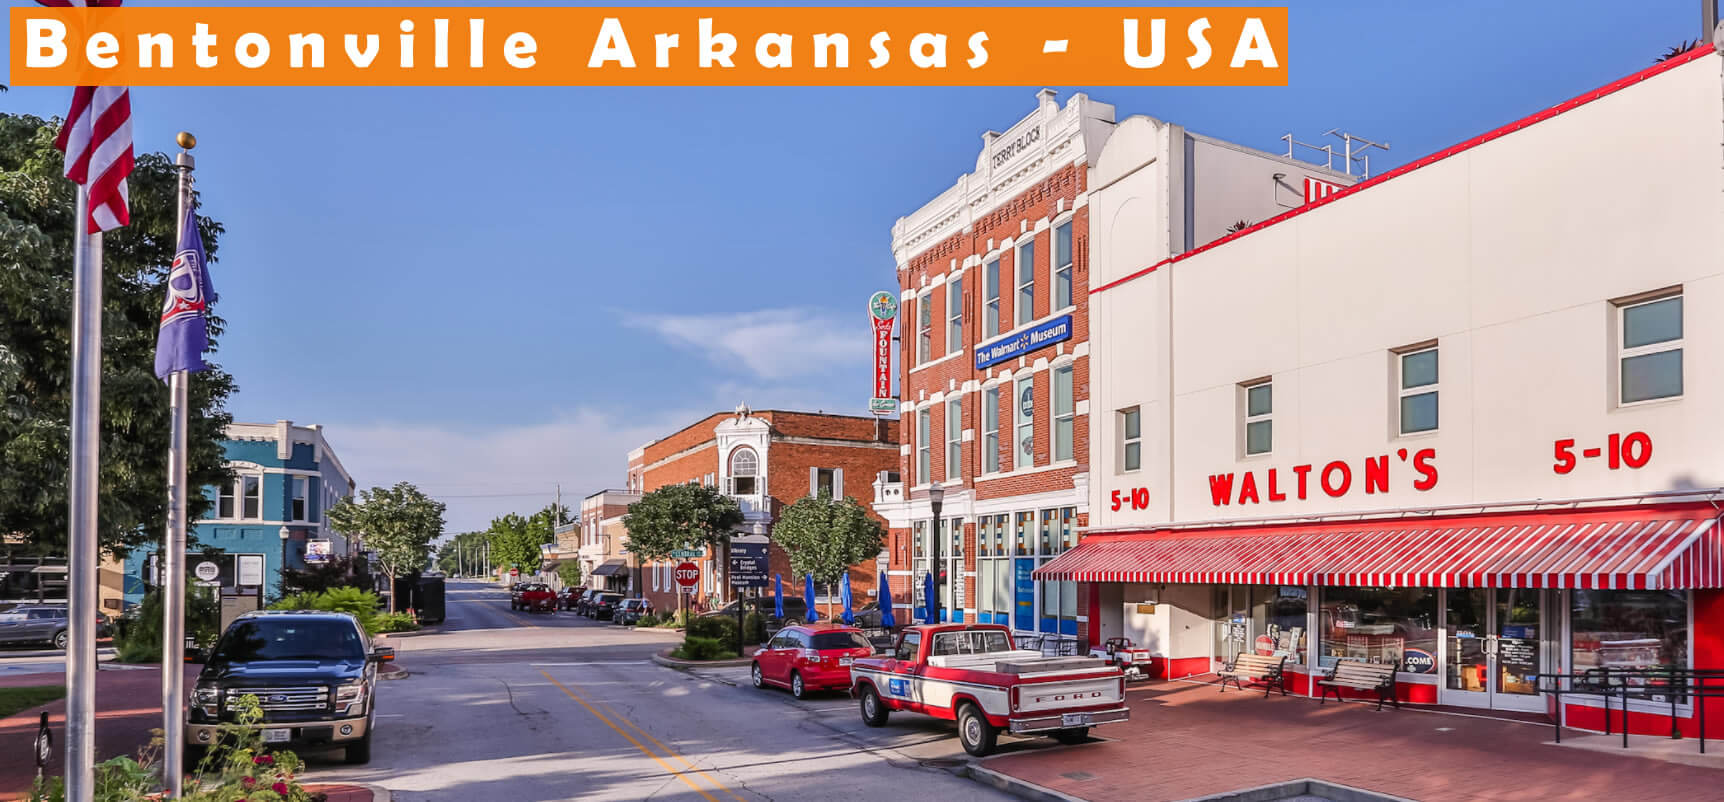 Bentonville Arkansas   USA